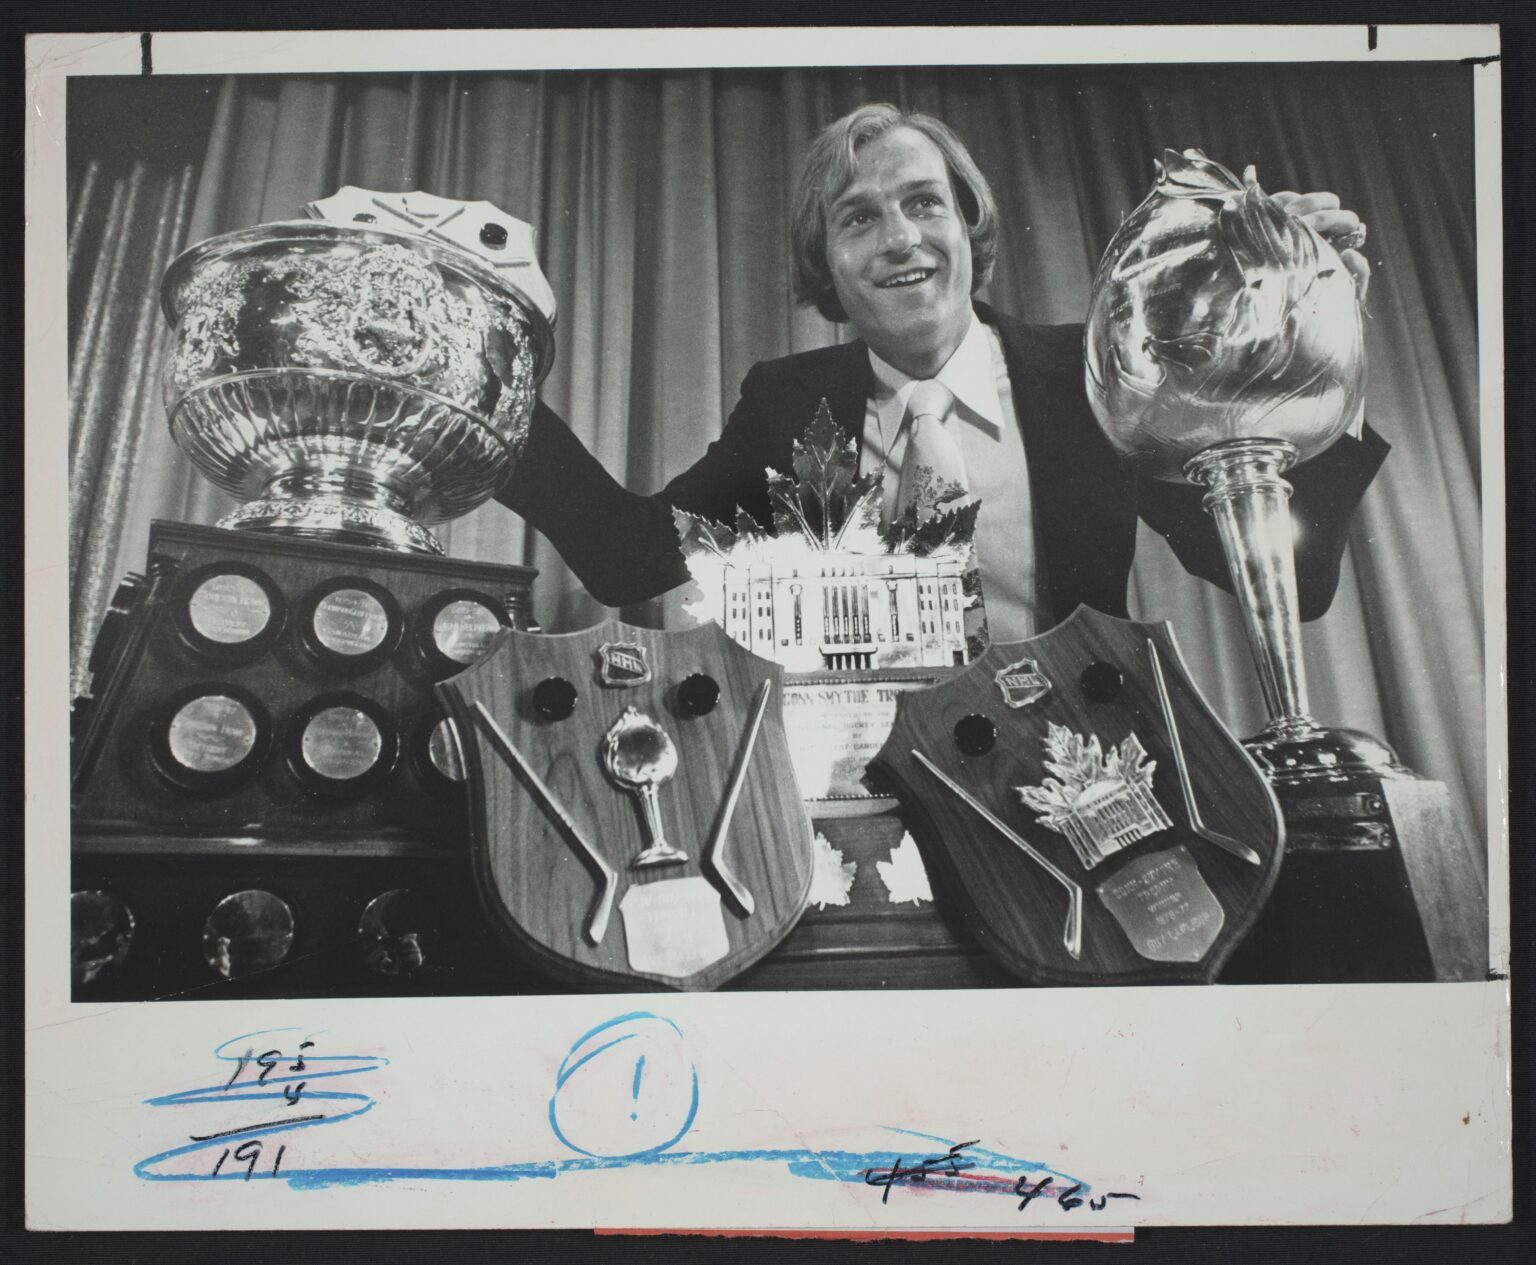 Le 7 juin 1977, Guy Lafleur pose fièrement aux côtés des trophées Conn Smythe, Lester B. Pearson, Art Ross et Hart remportés durant la saison exceptionnelle 1976-1977.